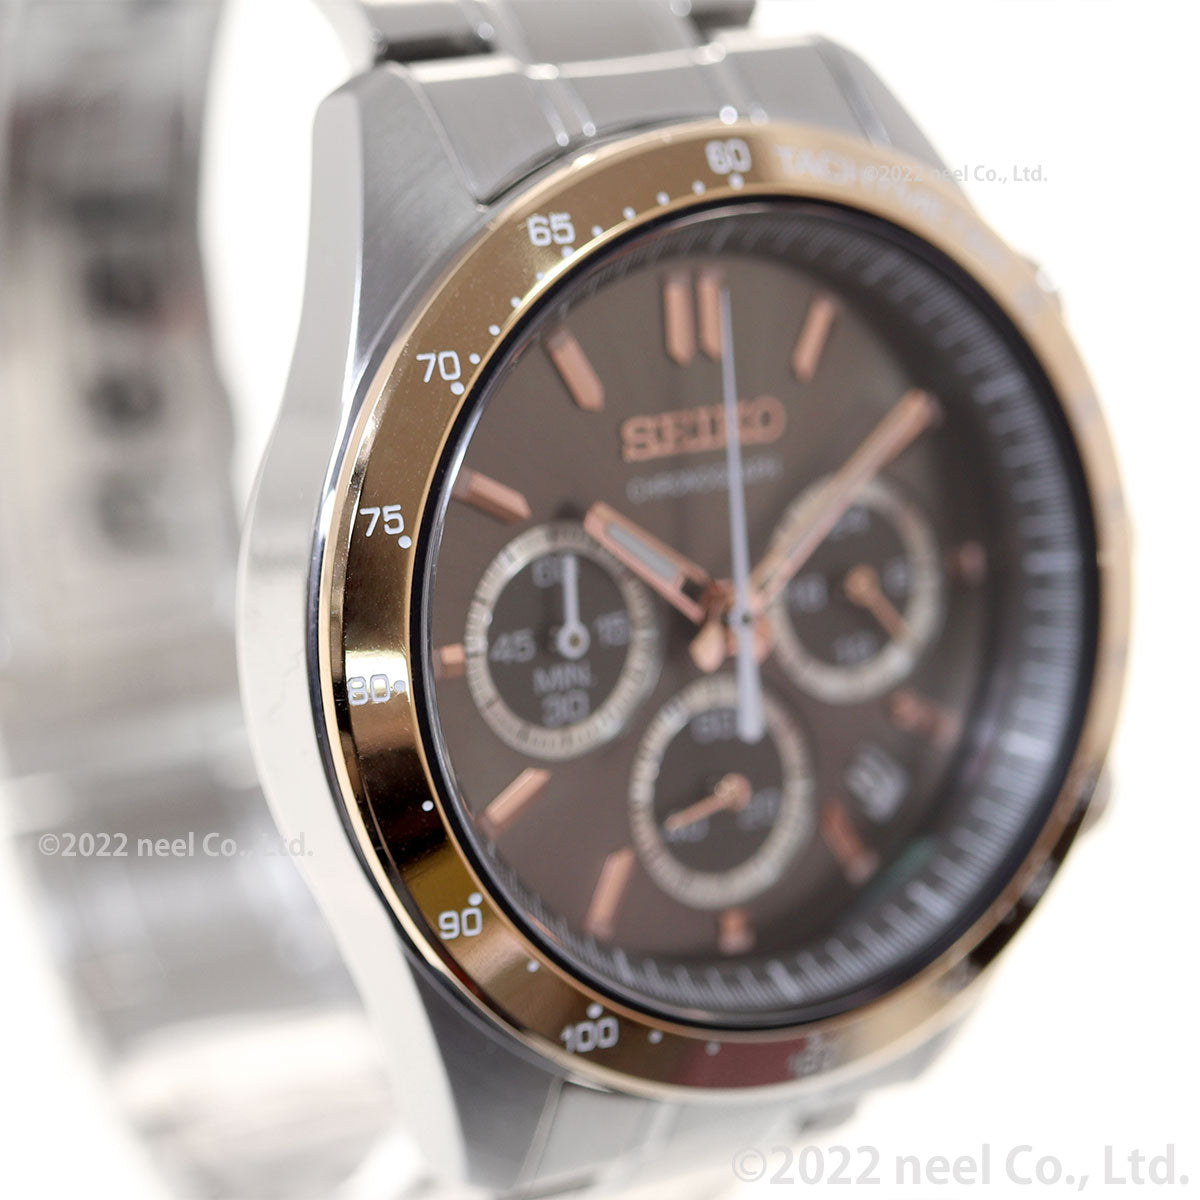 セイコー セレクション SEIKO SELECTION 8Tクロノ SBTR026 腕時計 メンズ クロノグラフ